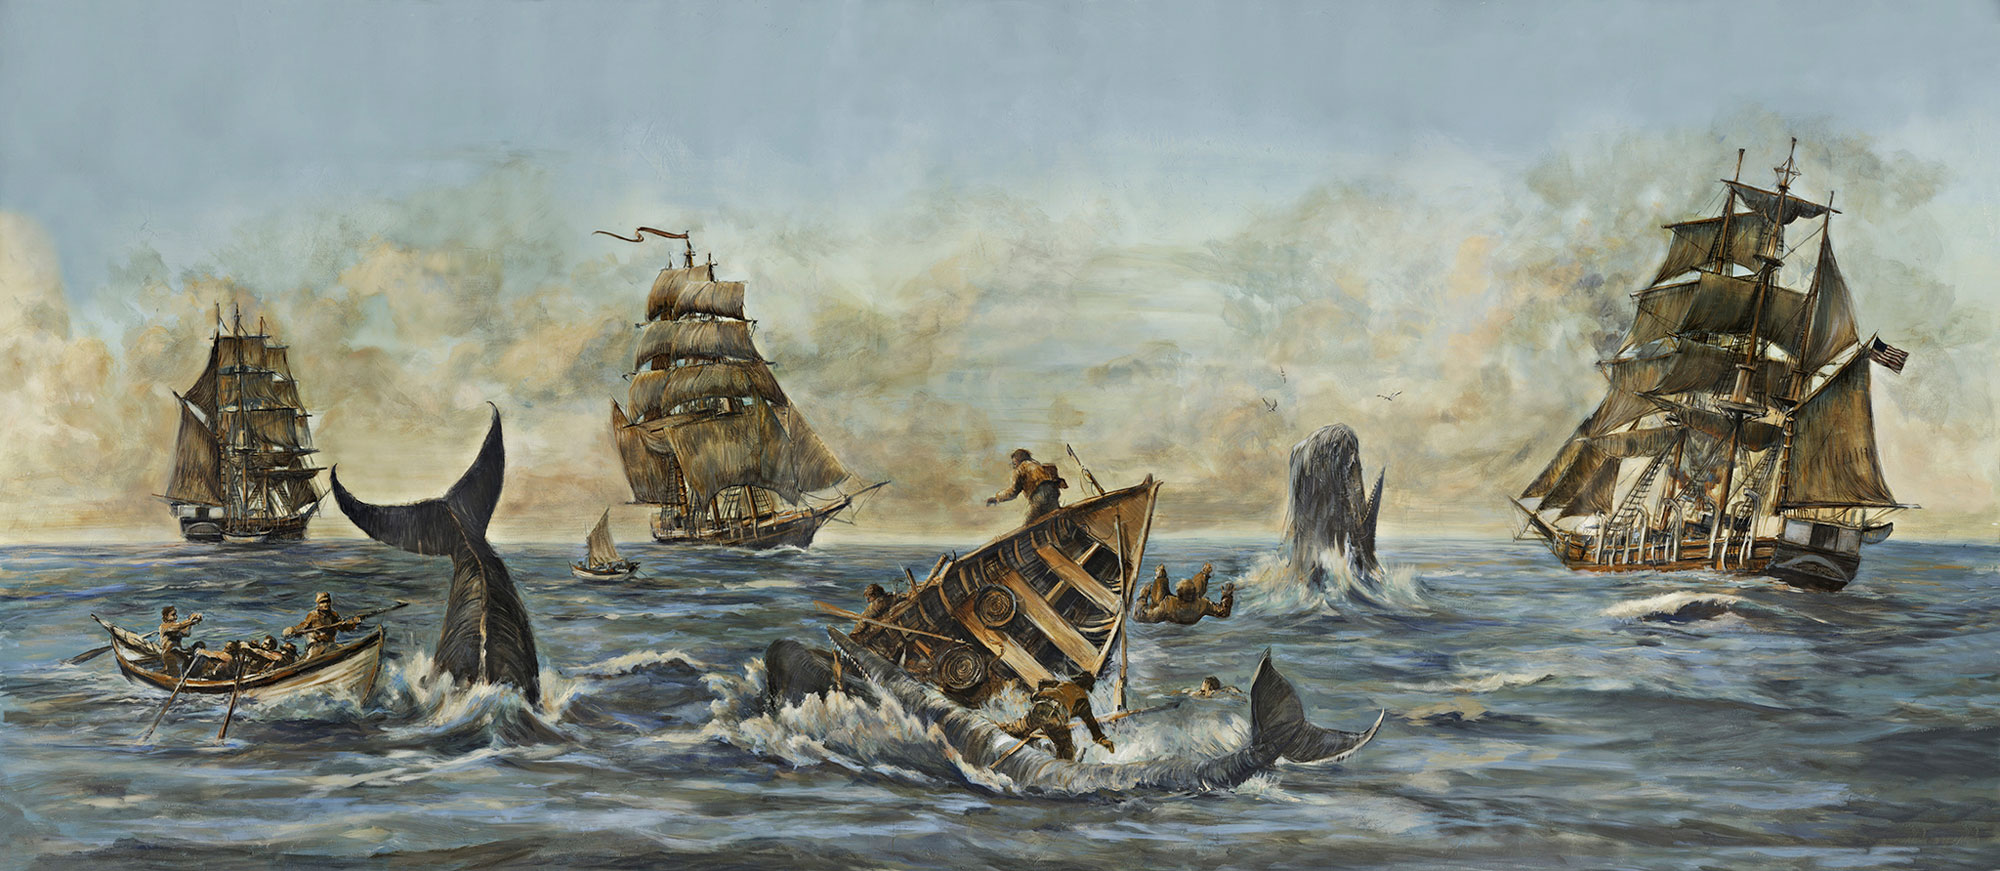 scenic mural wallpaper whaling scene